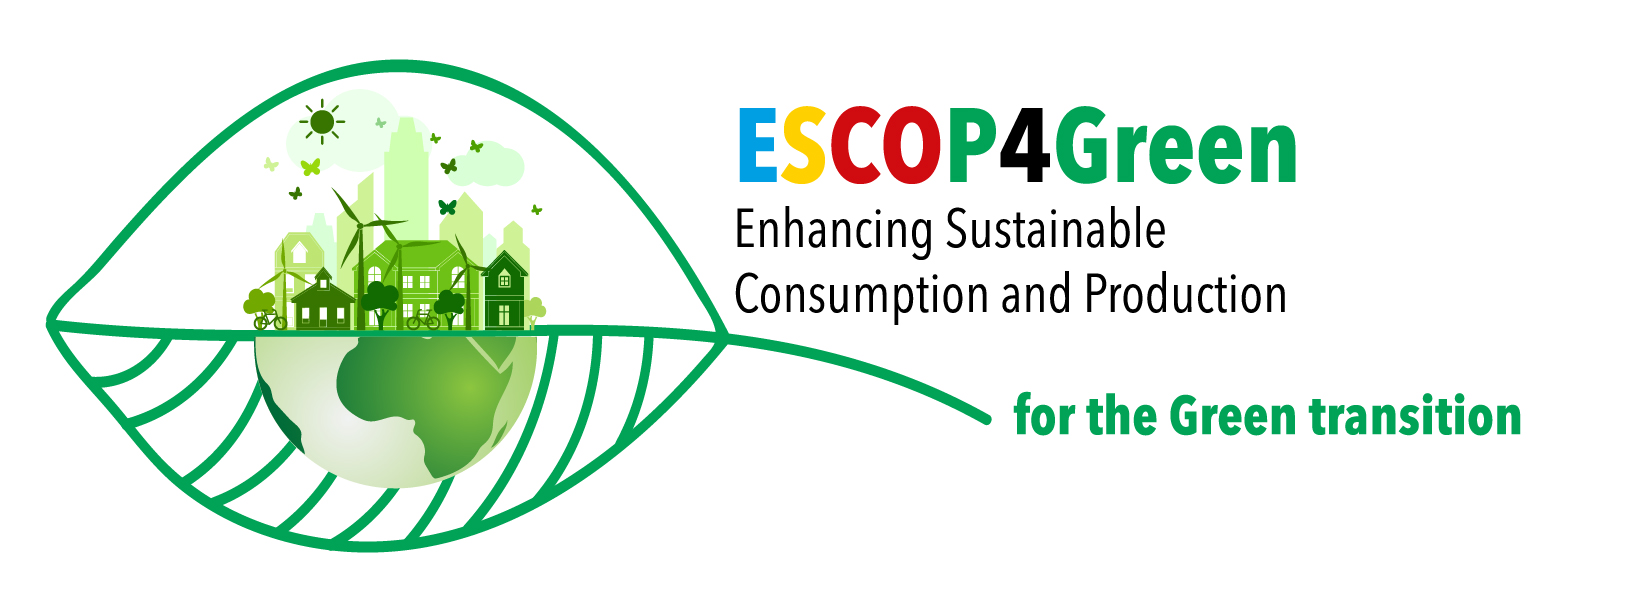 ESCOP4Green logo